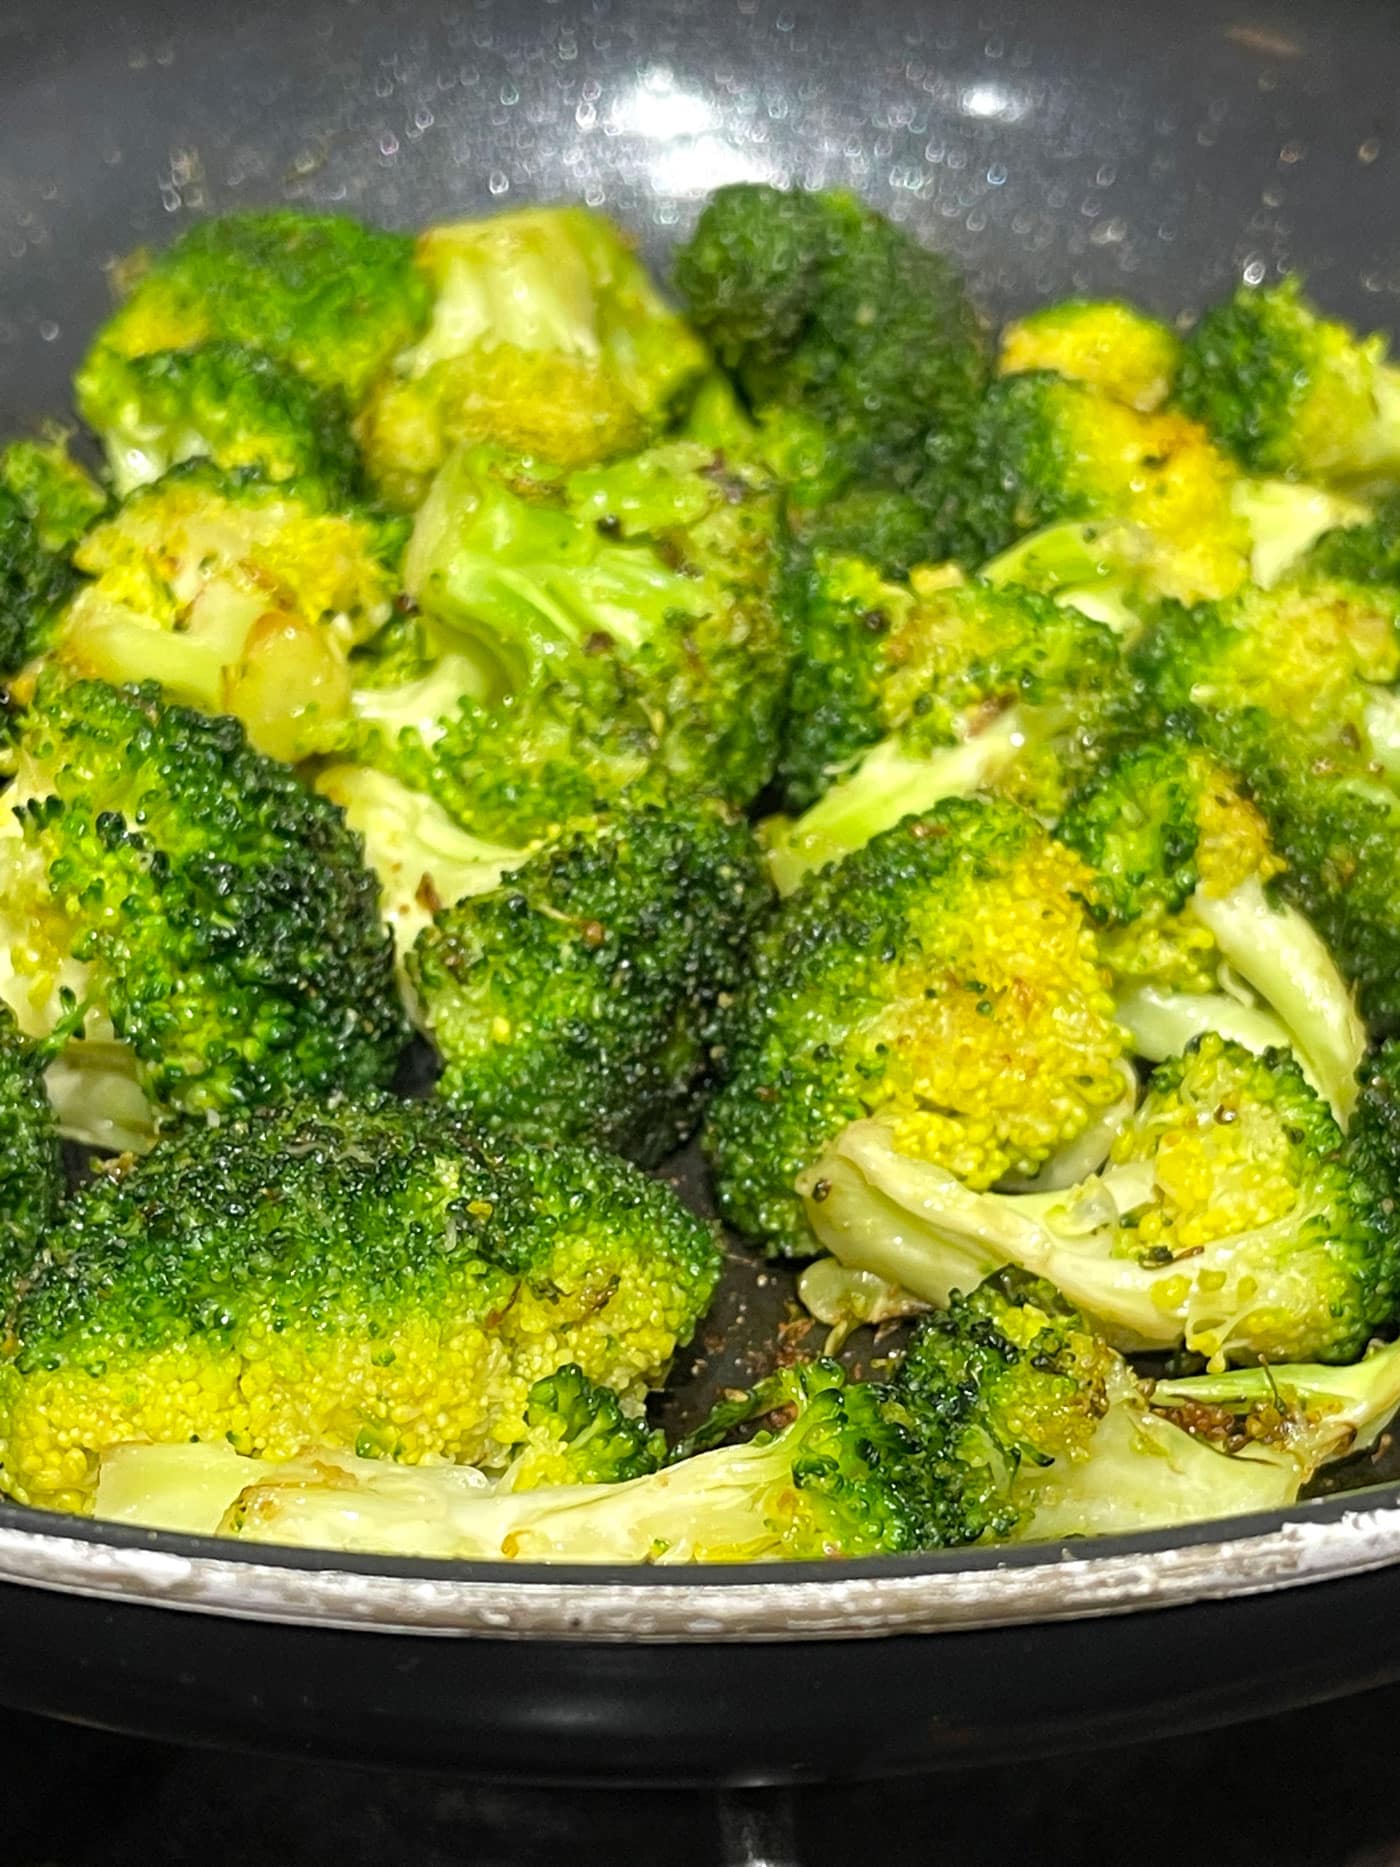 sauteed garlic broccoli on stove top